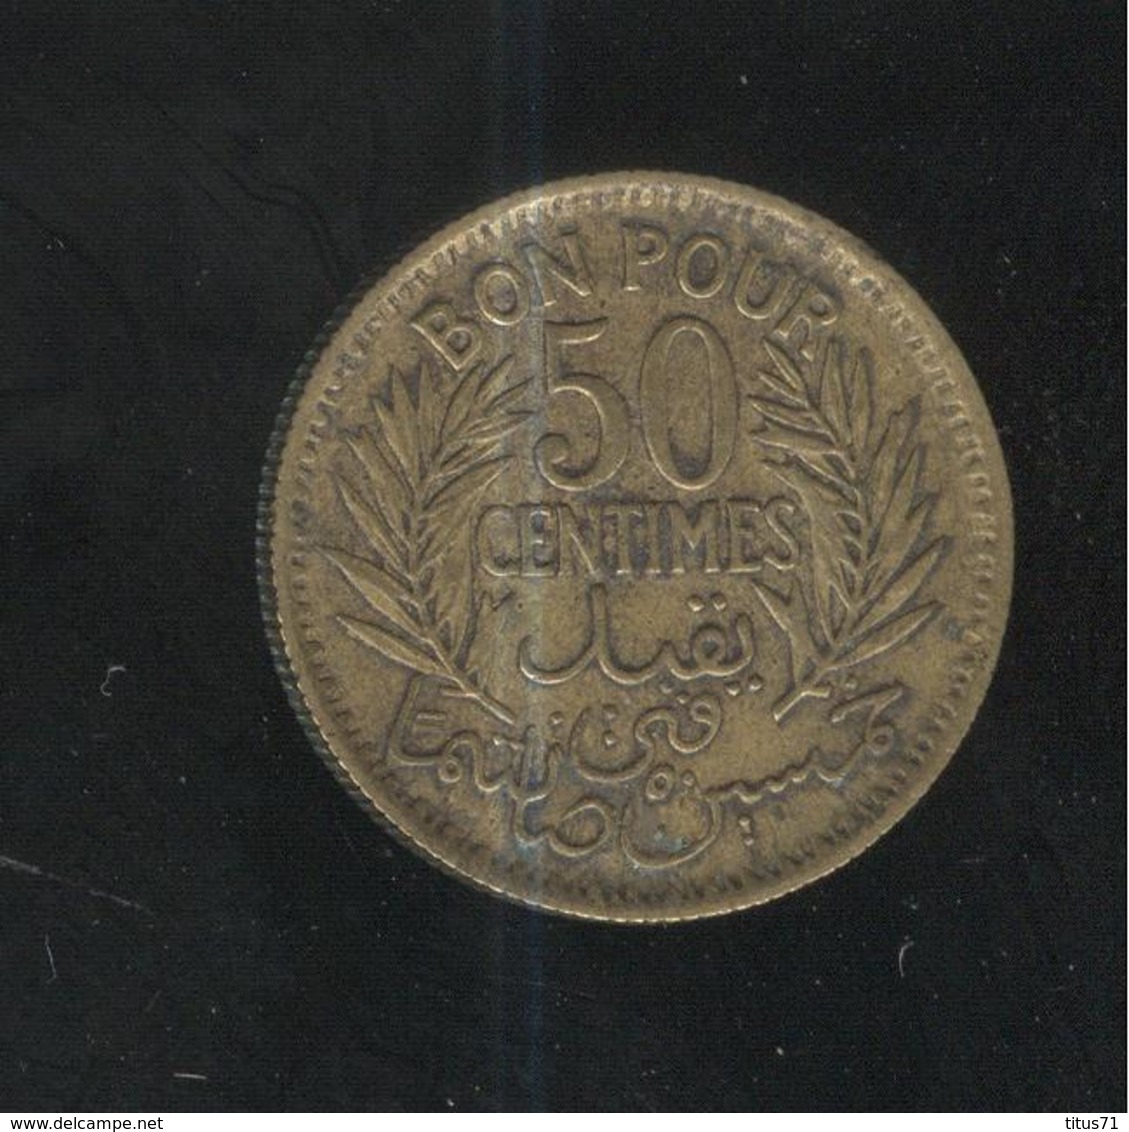 50 Centimes Tunisie 1945 - Tunisie